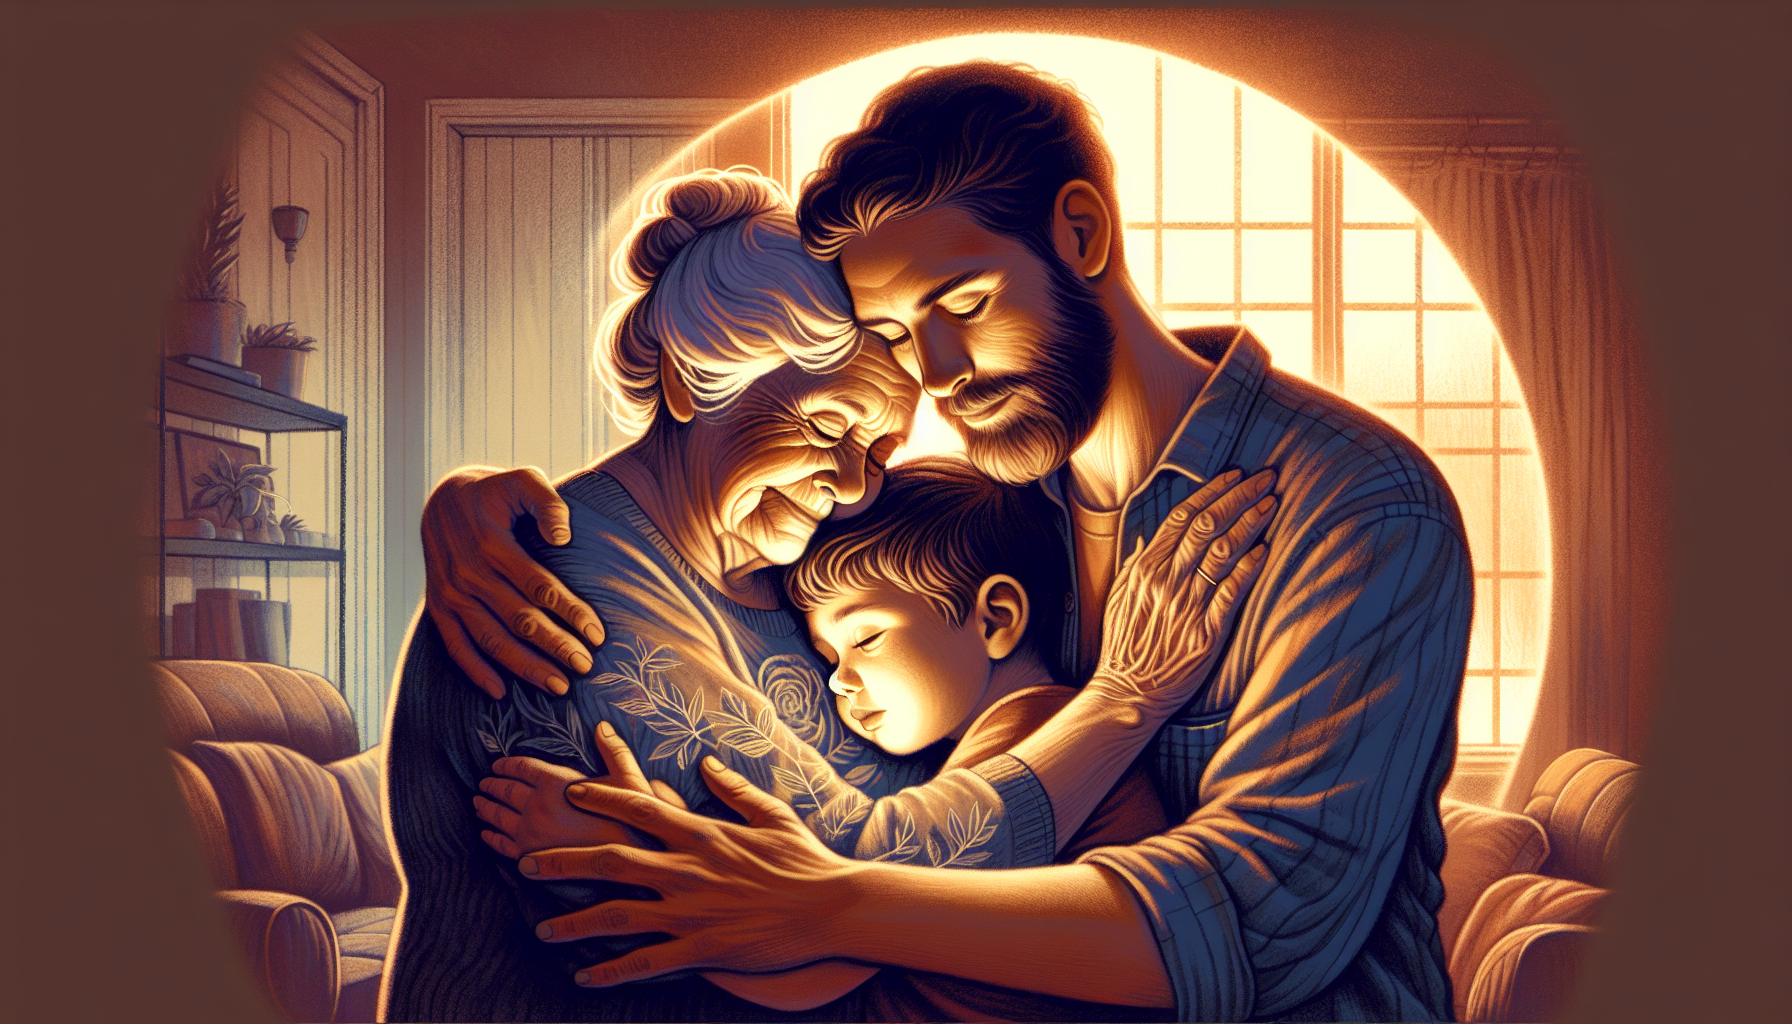 Familie, die sich vertrauensvoll umarmt